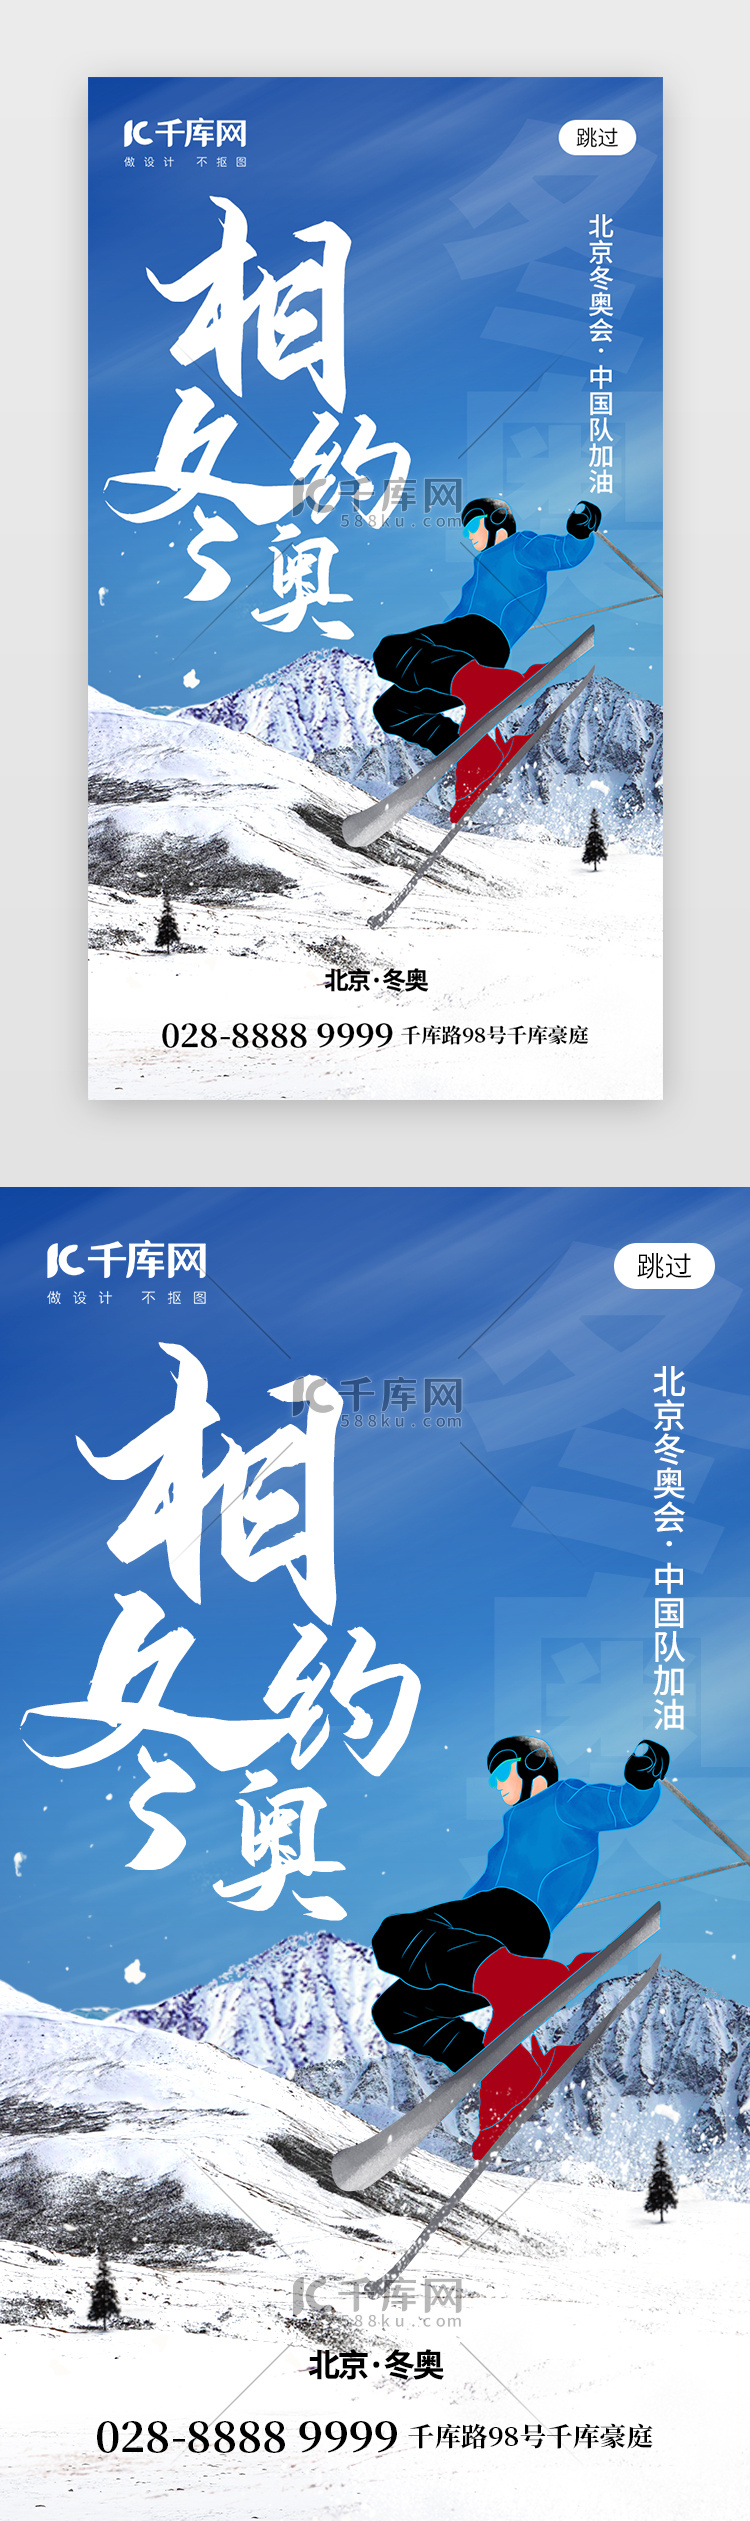 相约北京冬奥会 app闪屏创意蓝色运动员